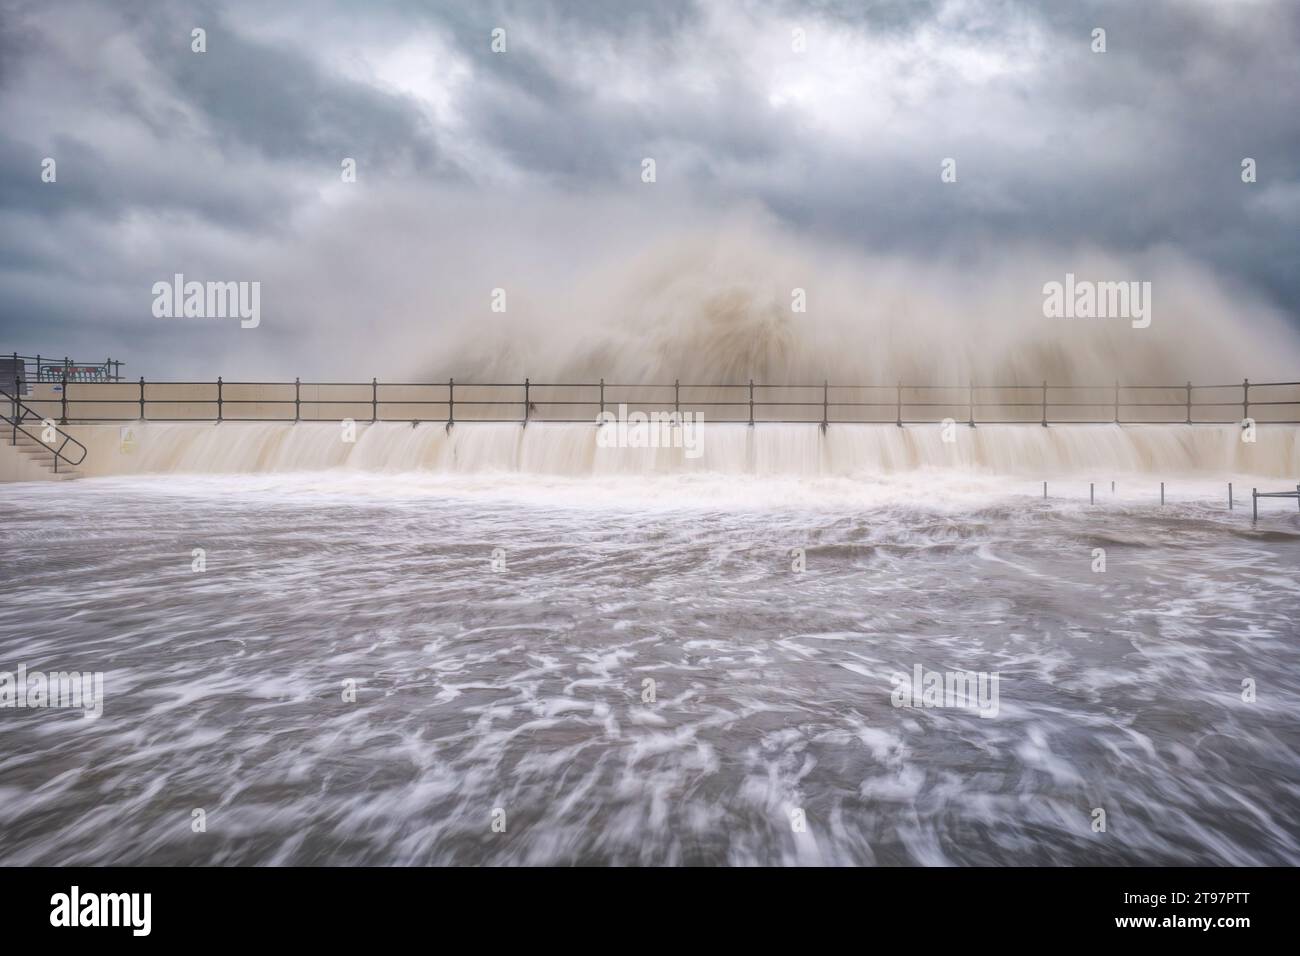 Regno Unito, Scozia, North Berwick, lunga esposizione di onde che si infrangono sul muro del porto durante Storm Babet Foto Stock